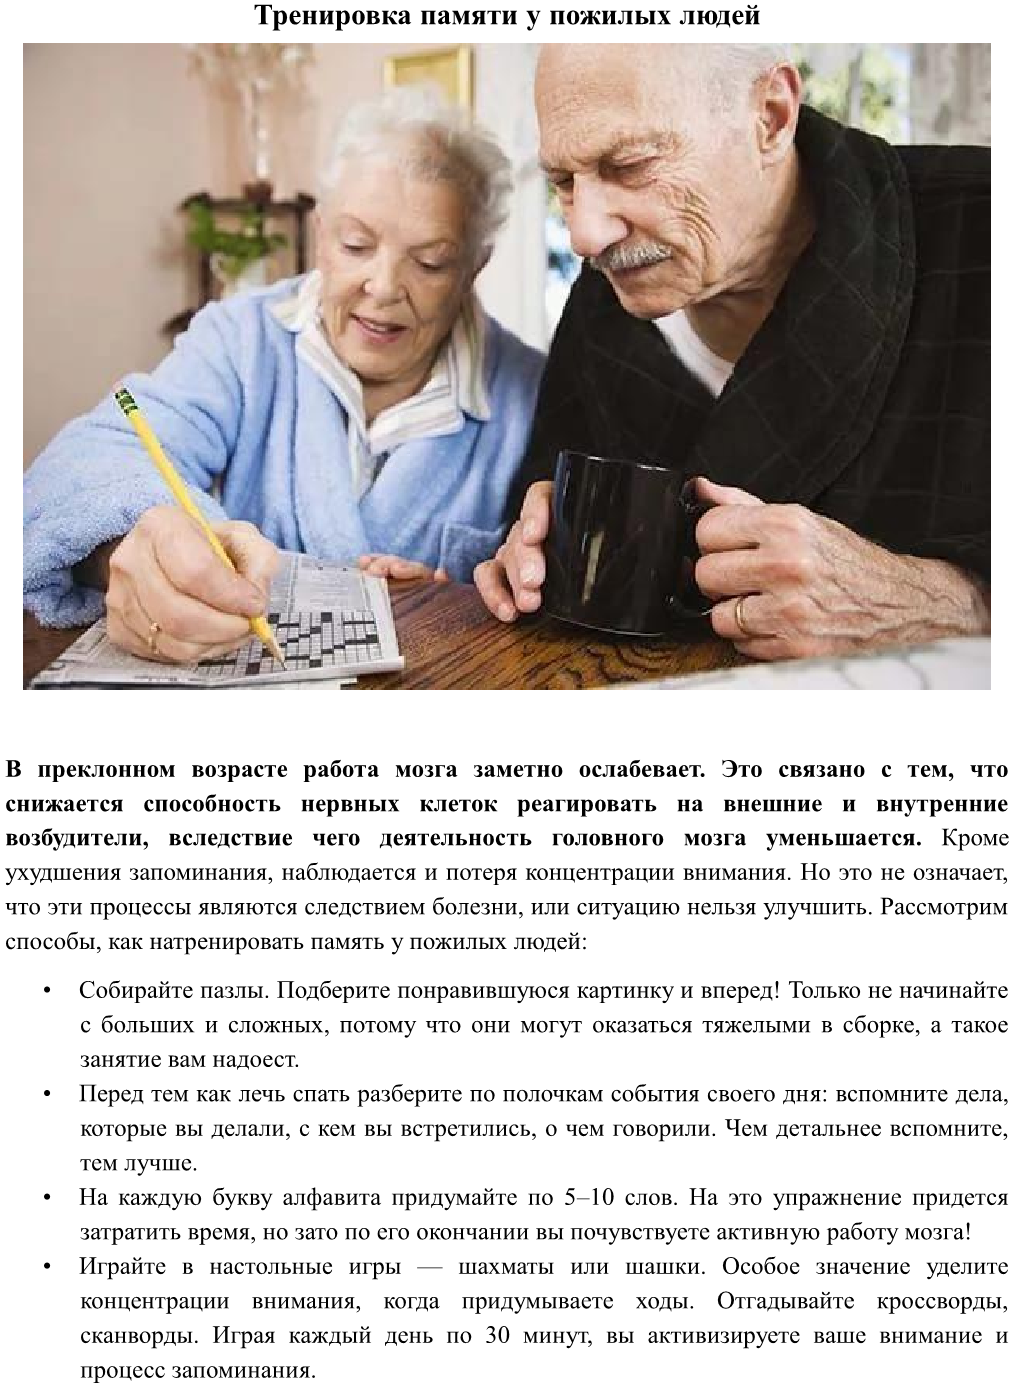 Улучшение памяти в возрасте. Рекомендации развития памяти у пожилых. Внимание у пожилых людей. Тренировка мозга для пожилых людей. Упражнения на сохранение памяти у пожилых людей.